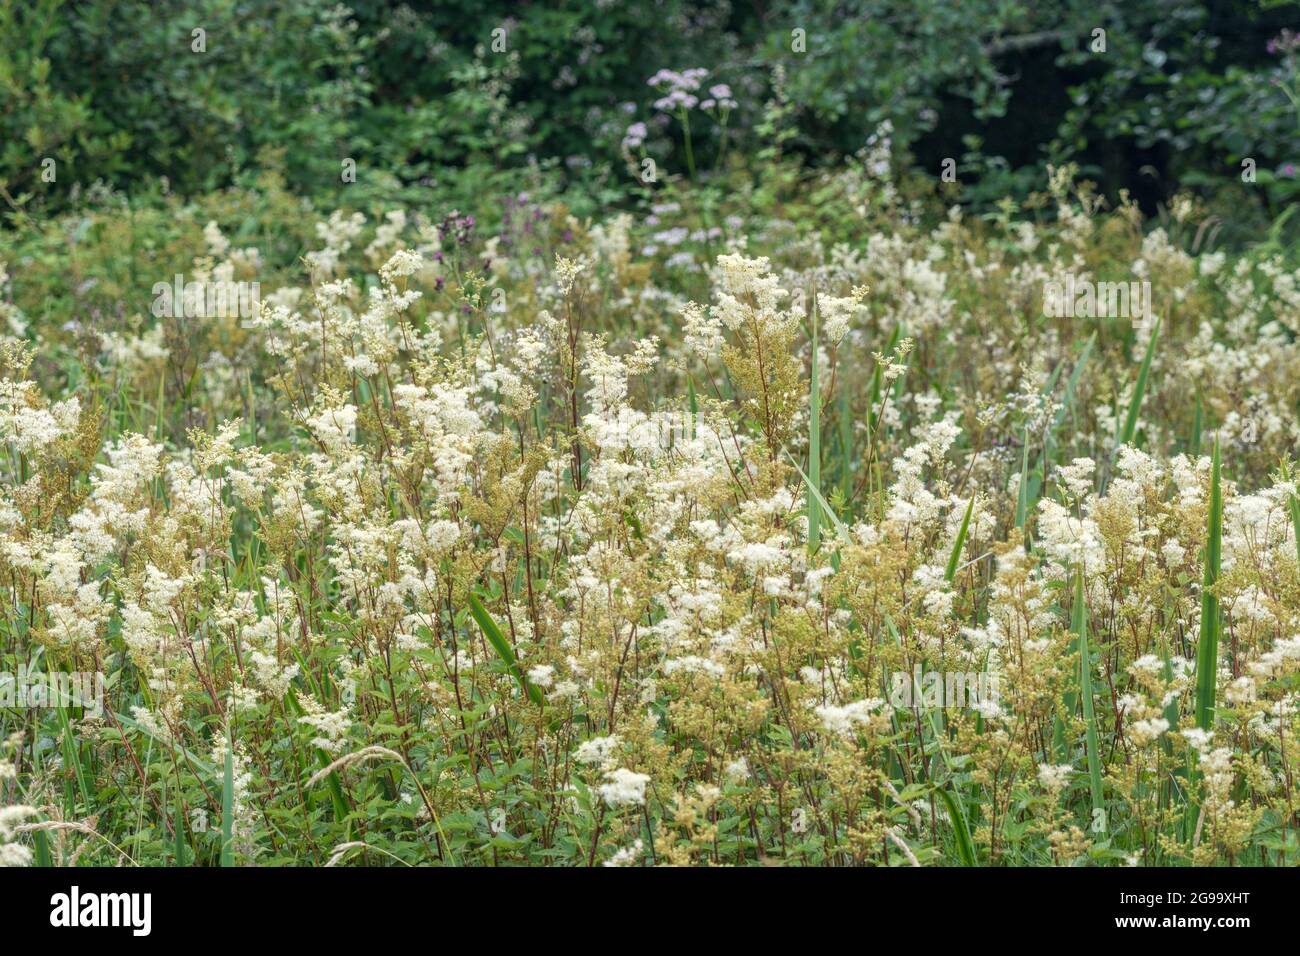 Meadowsweet / Filipendula ulmaria flowers growing in wet meadow. Medicinal plant used in herbal medicine & herbal remedies analgesic properties. Stock Photo